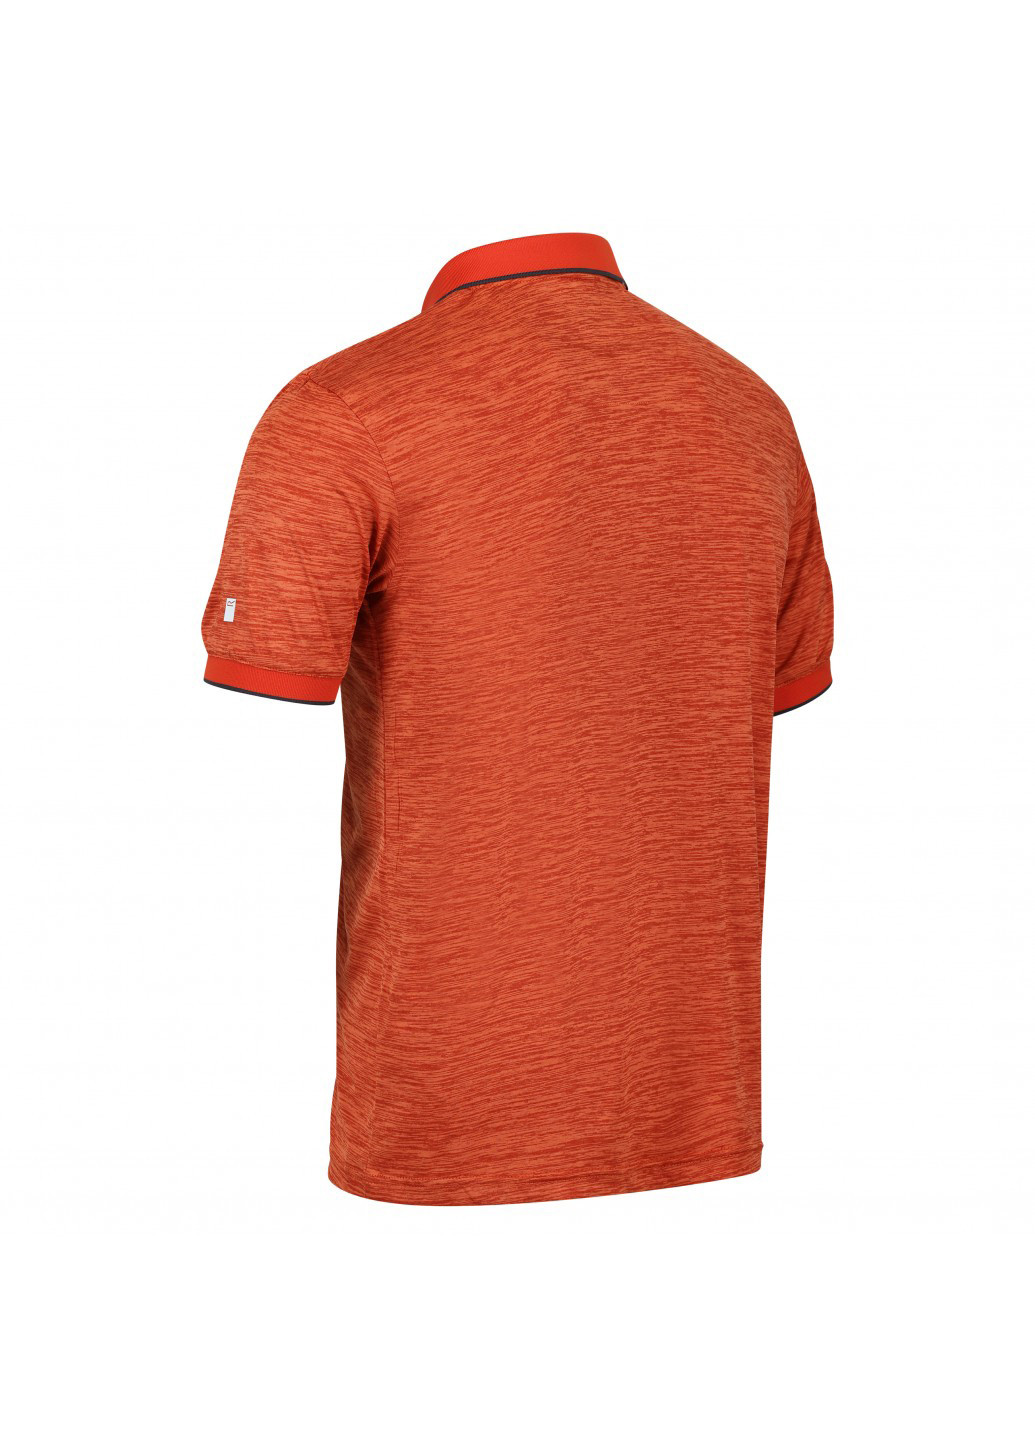 Терракотовая футболка-поло для мужчин Regatta меланжевая